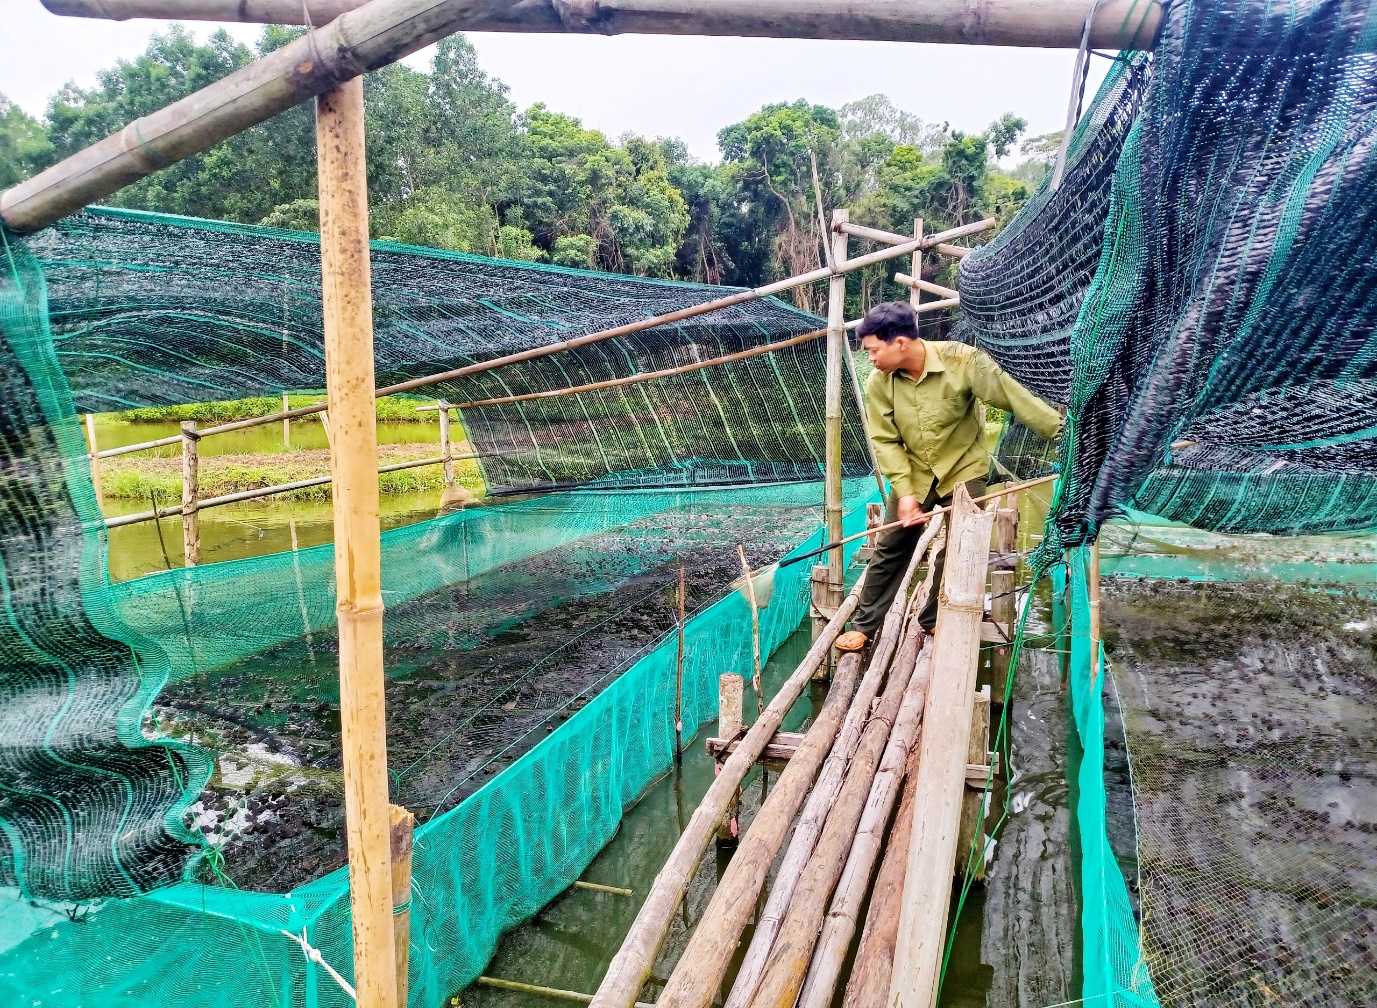 Nuôi ếch kết hợp nuôi cá rô, một nông dân Quảng Trị tiết kiệm chi phí mà lợi nhuận lại tốt hơn hẳn - Ảnh 1.